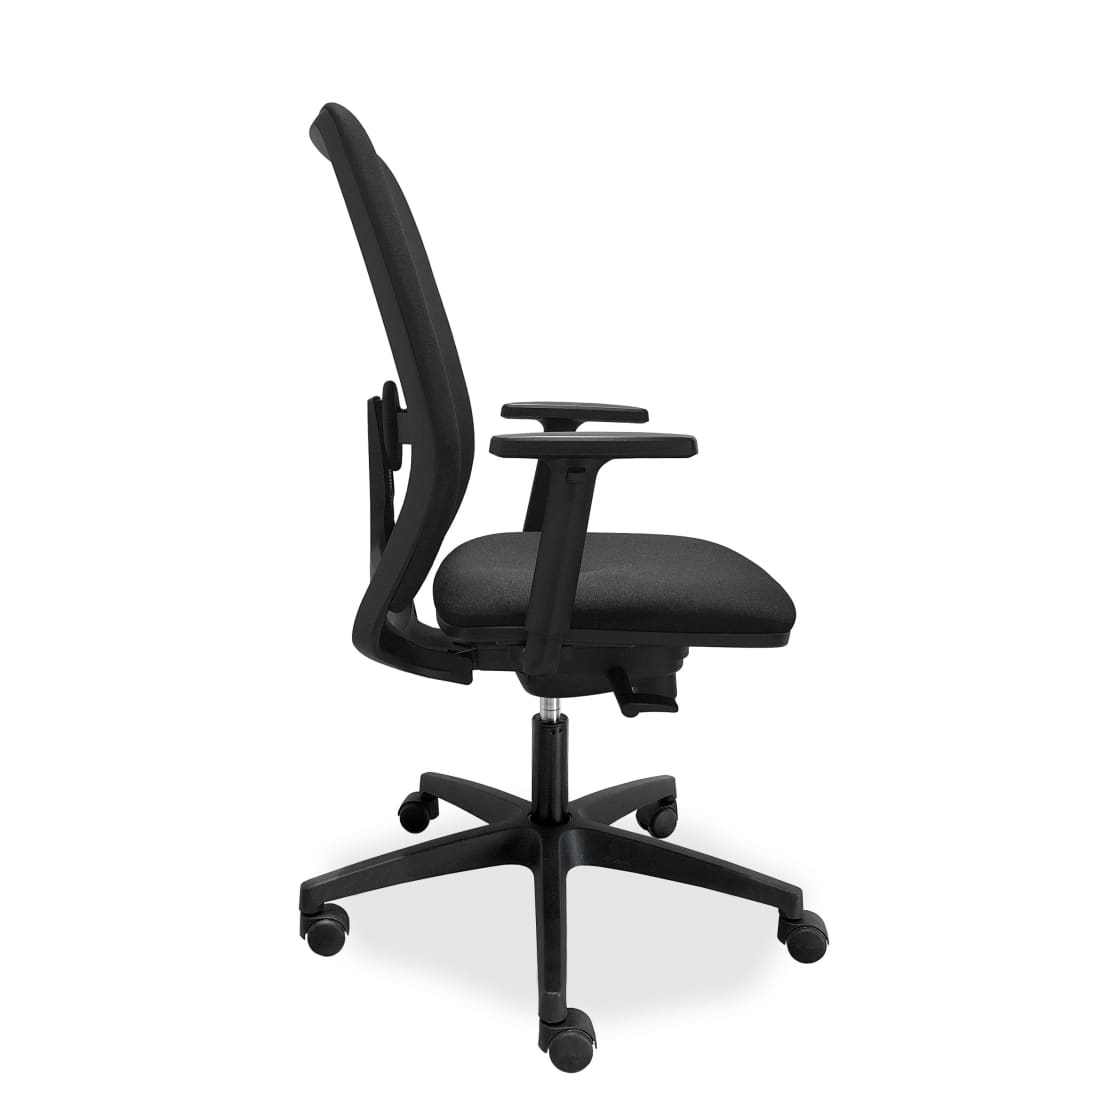 ergonomische-bureaustoel-comfort-de-singel-nen-1335-bureaustoelen-stoel-automotive-709_a4aa1c67-5819-442d-9e98-038b4bda1e59.jpg